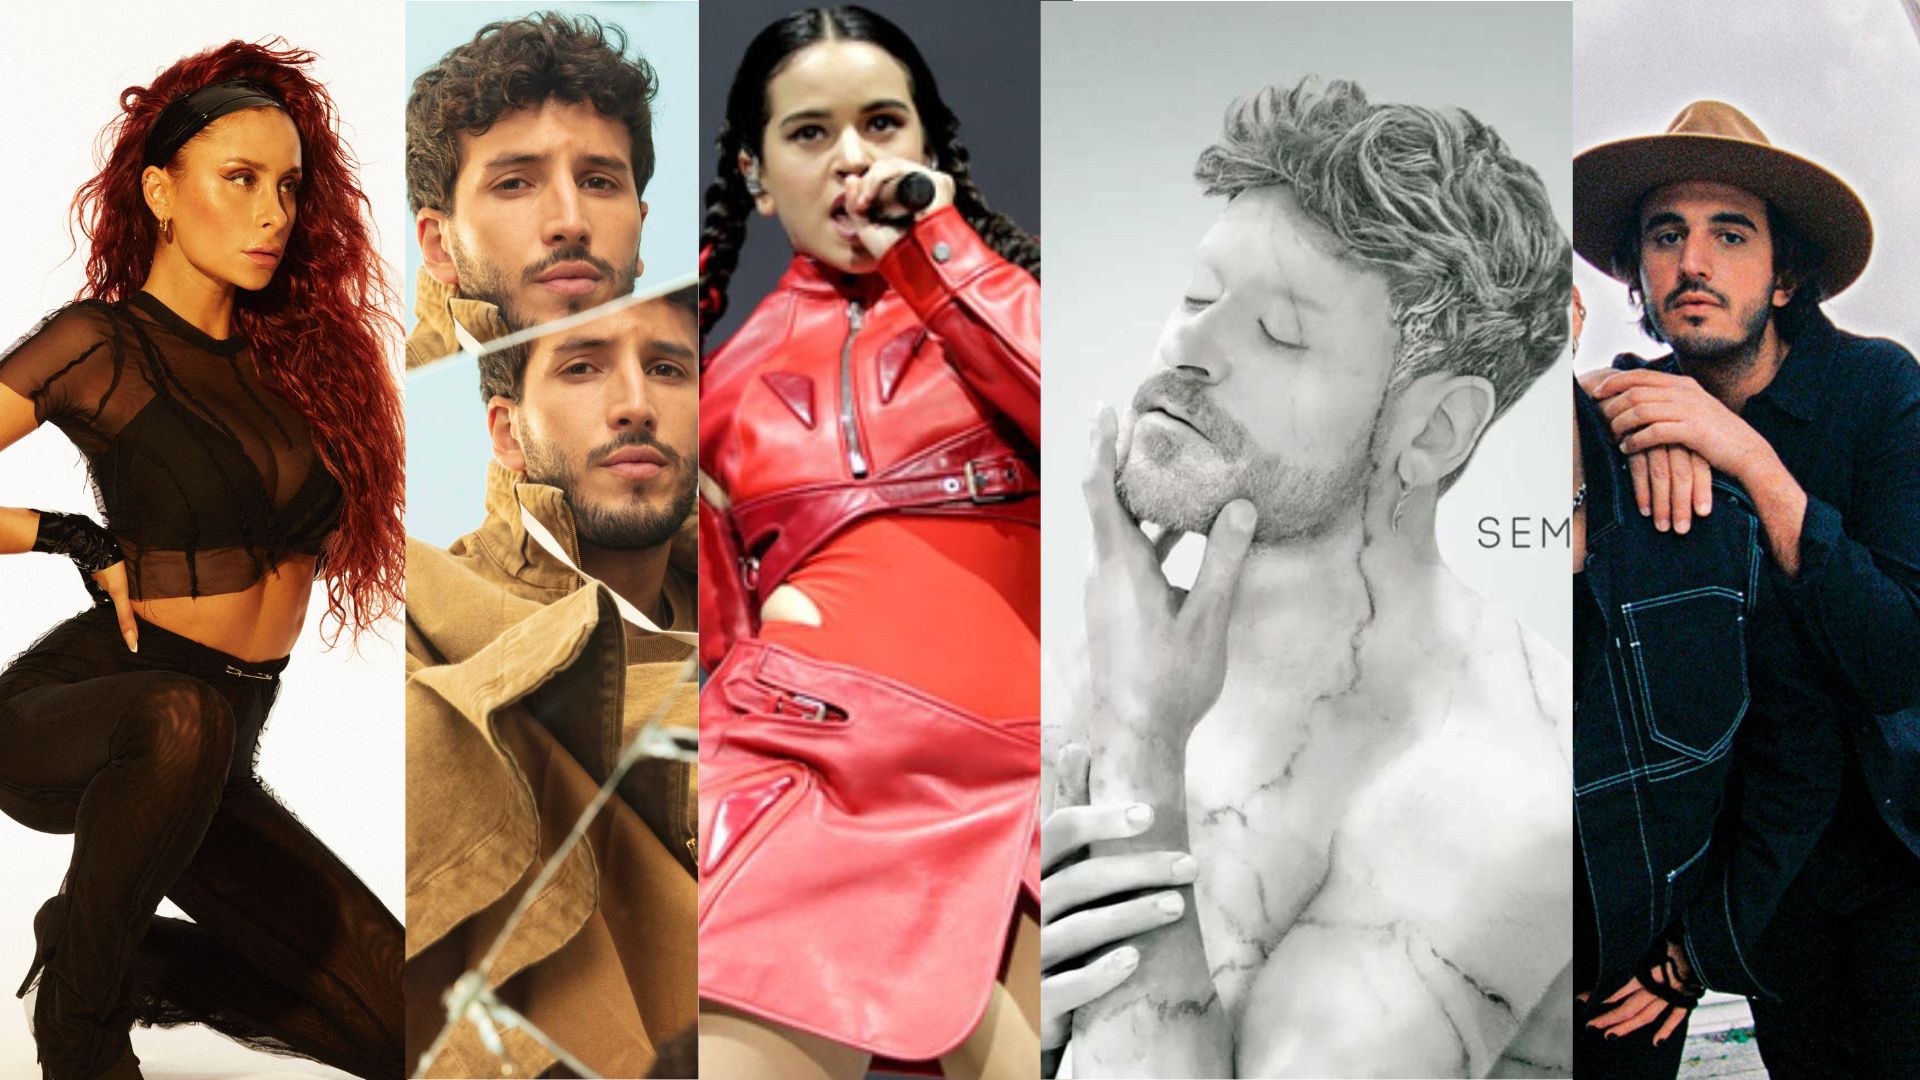 Mejor disco 2022 de España y Latinoamérica| Vota por tu favorito hasta el 28 de noviembre (incluido)